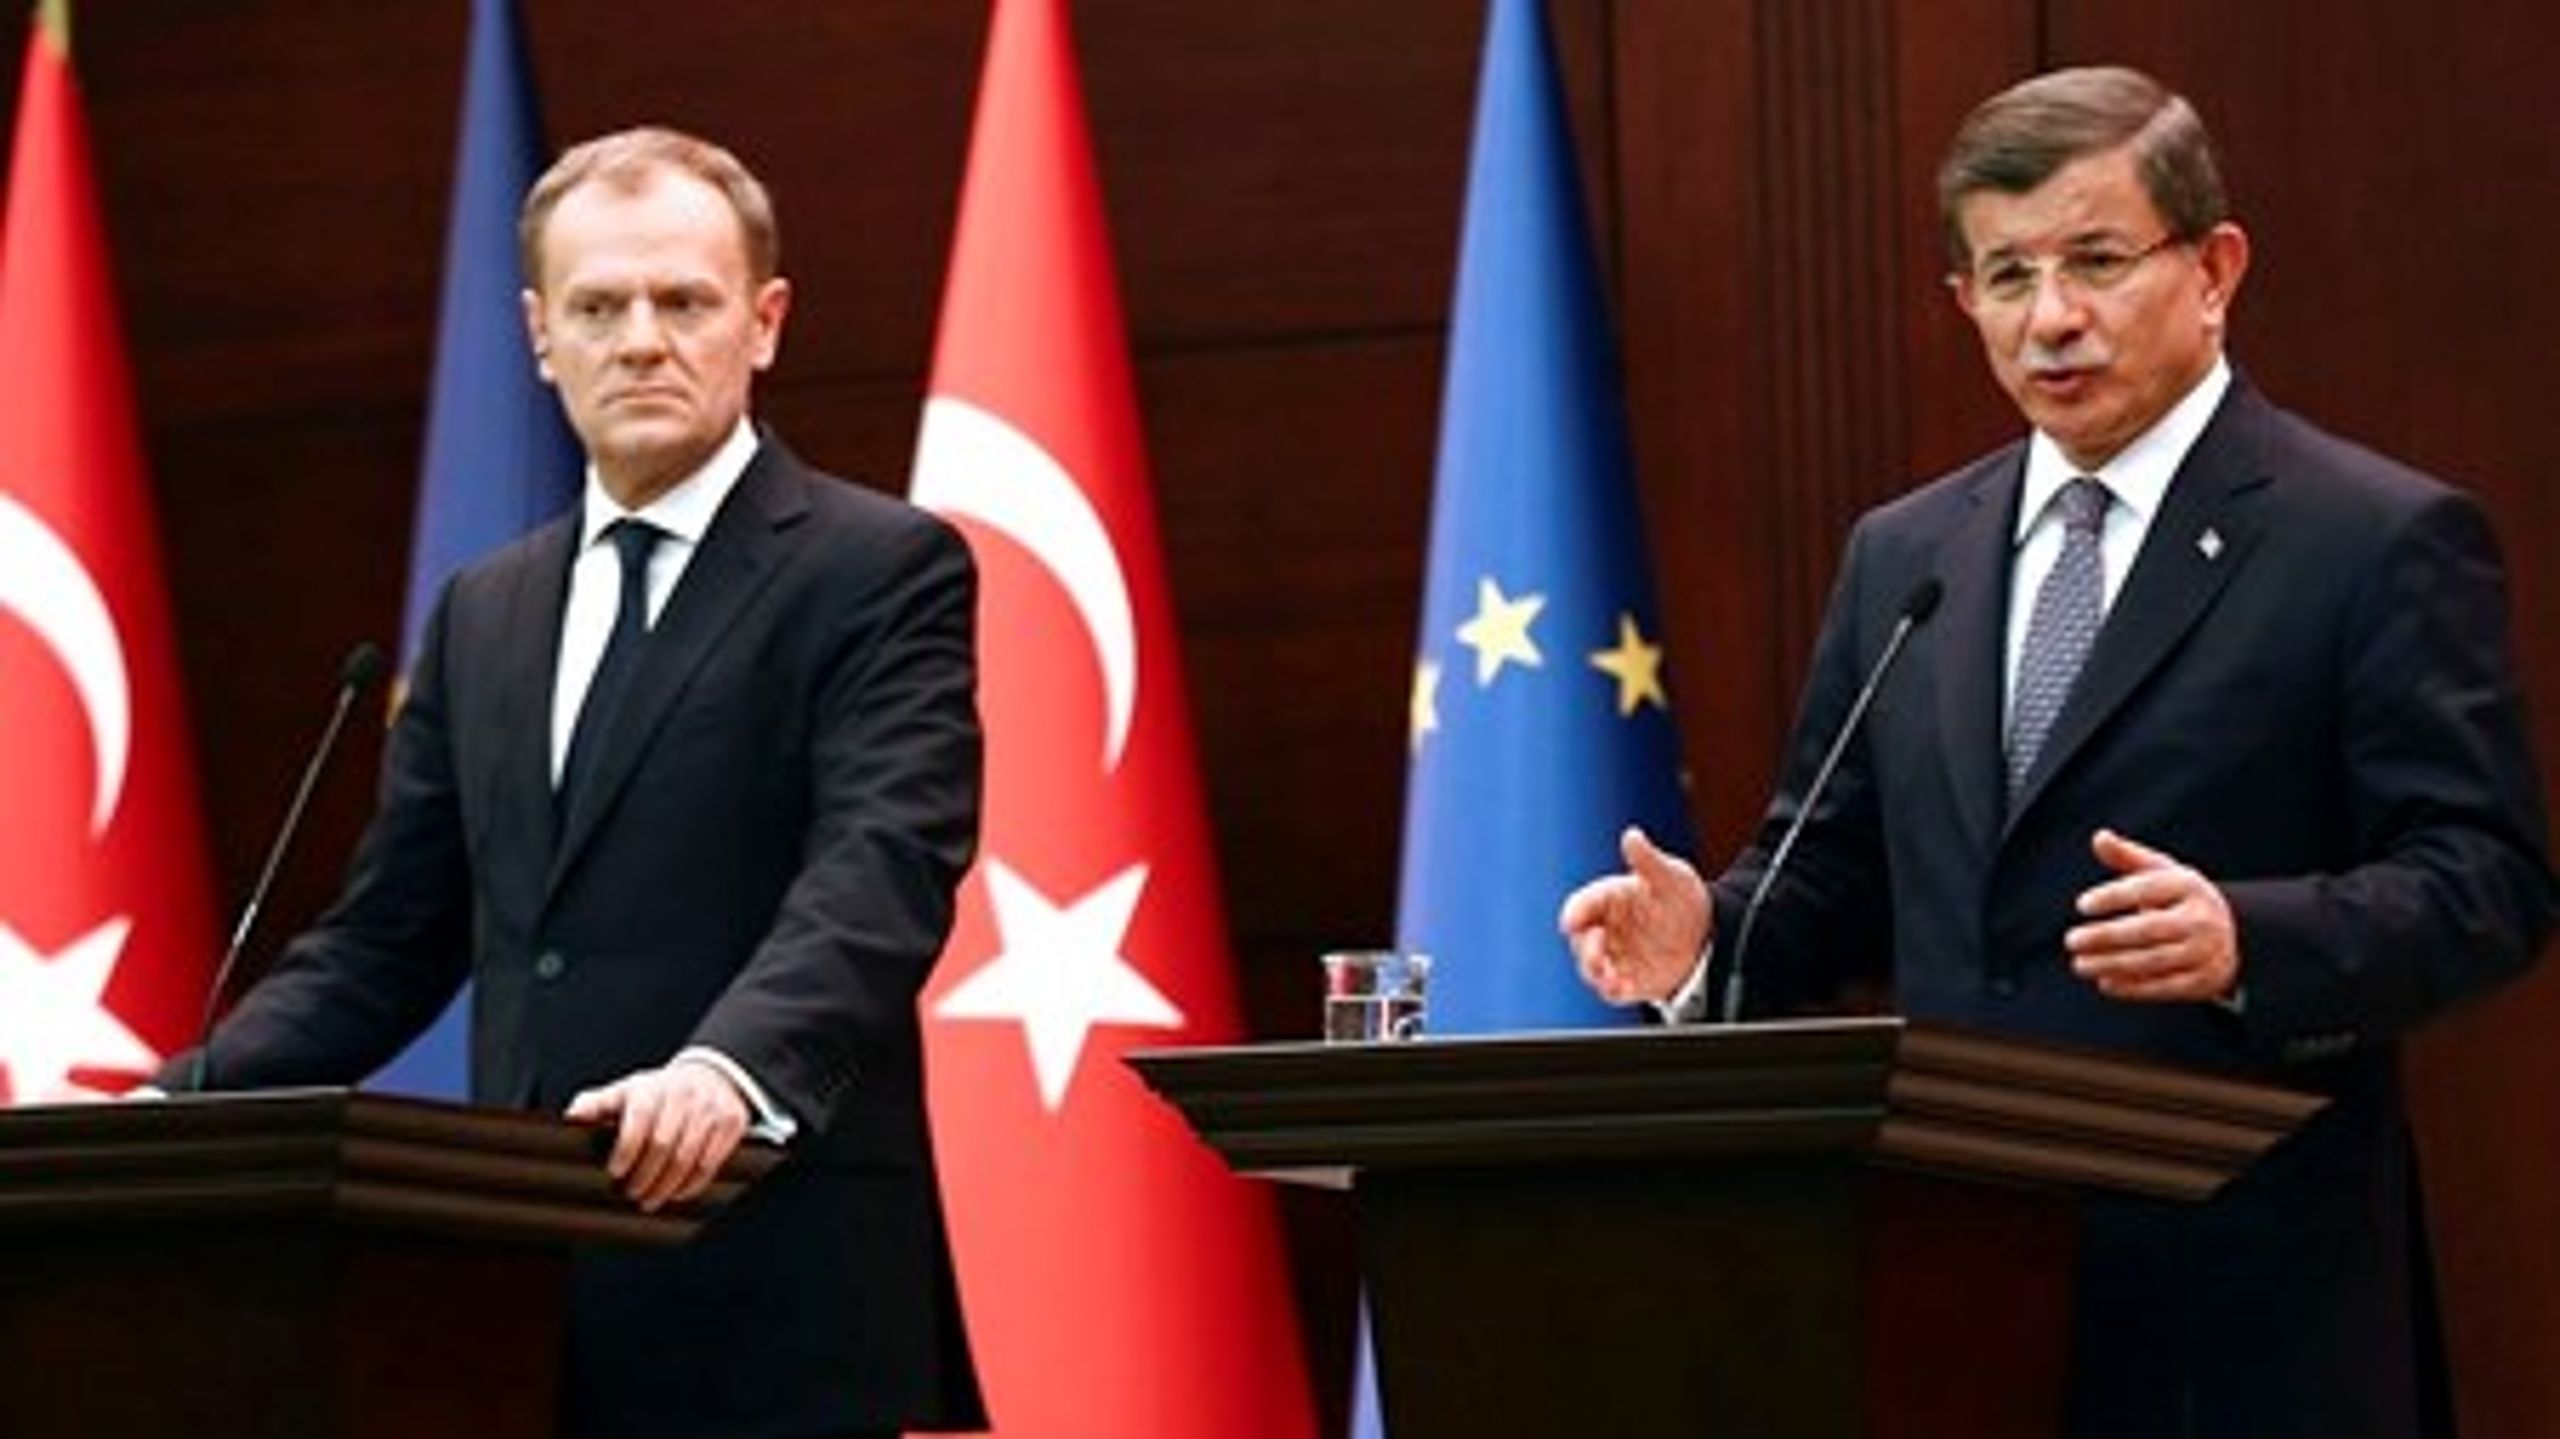 Chefen for Det Europæiske Råd, Donald Tusk, og den tyrkiske premierminister, Ahmed Davutoglu, står centralt ved det topmøde, som EU's chefer mandag har med Tyrkiet om løsningen af flygtningekrisen.